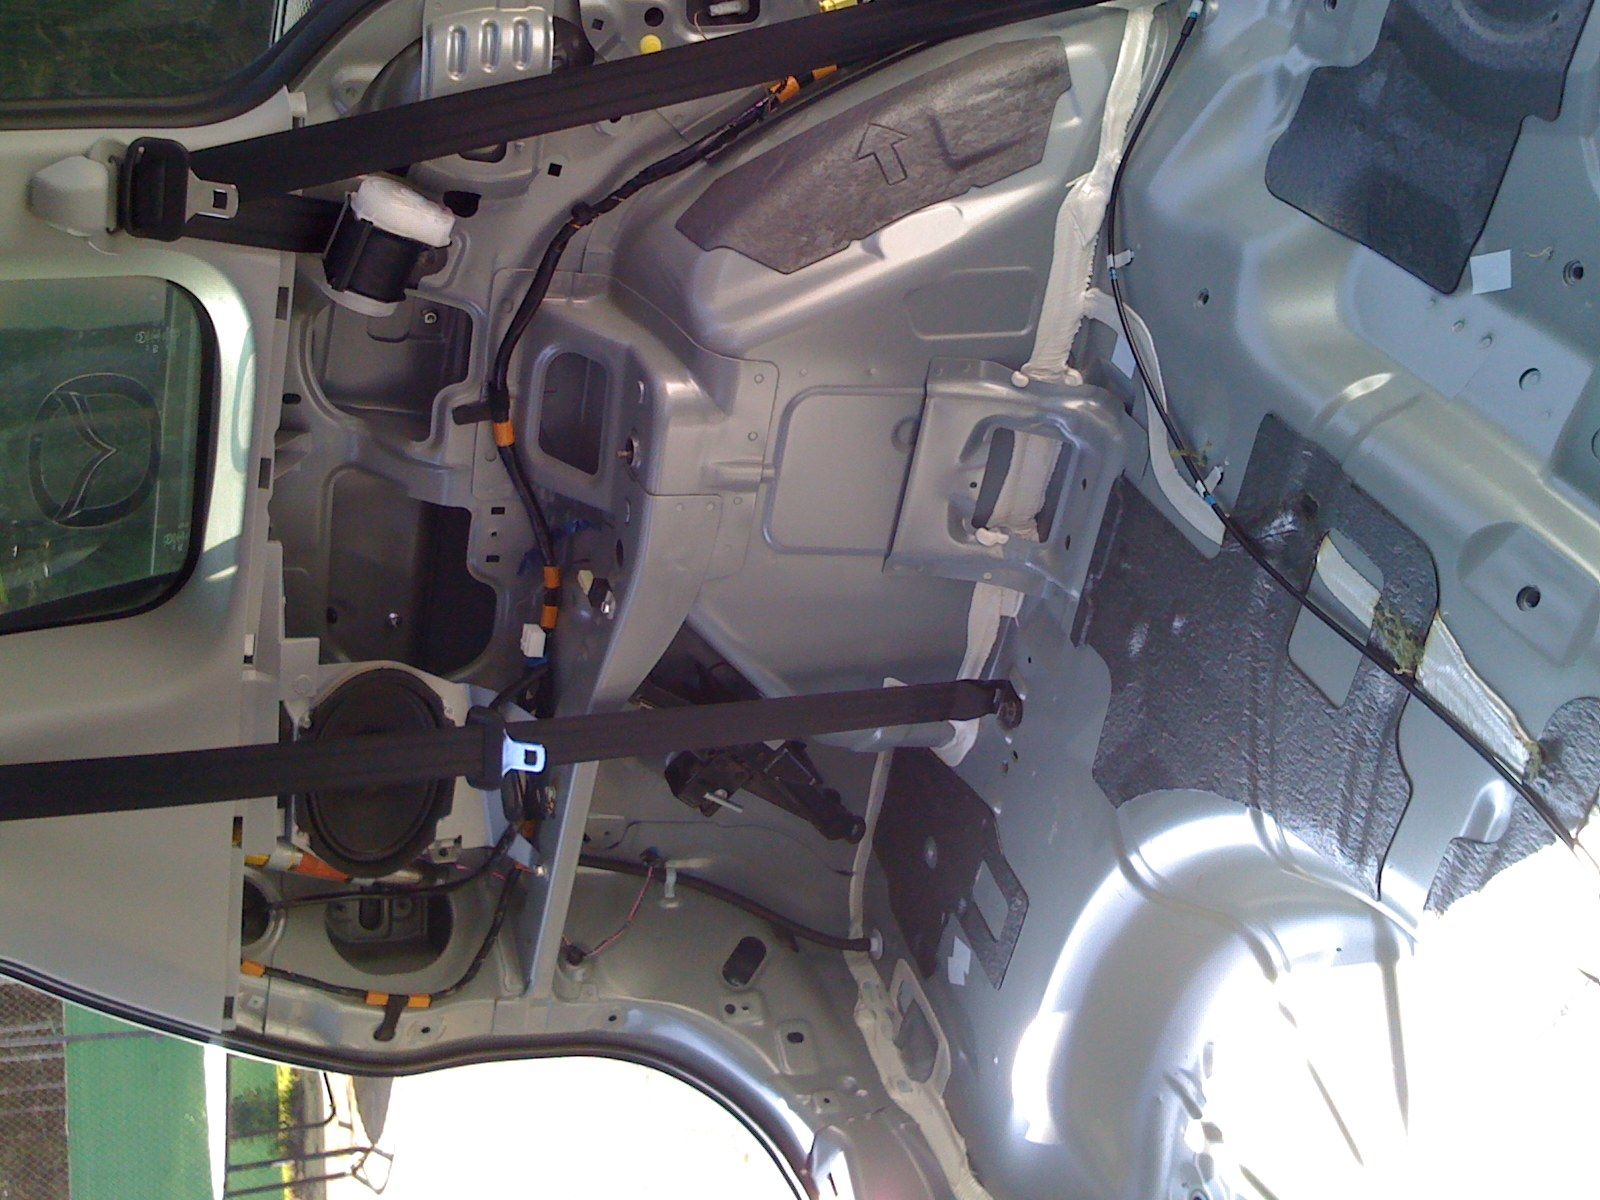 Mazda 5 interior 001.jpg